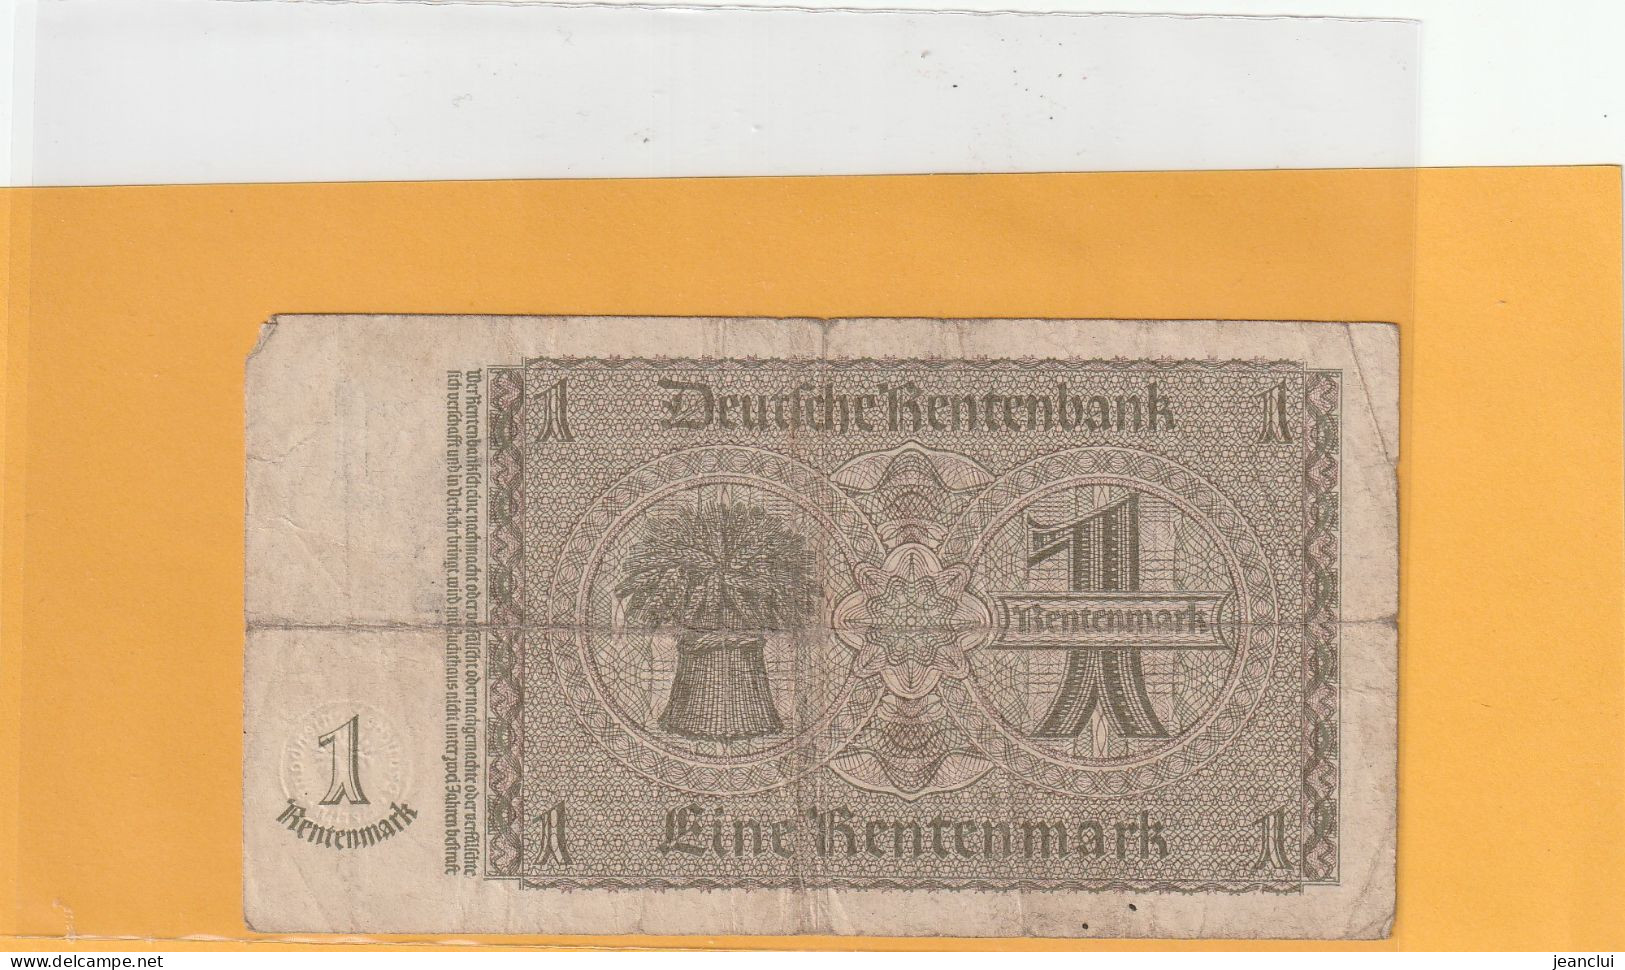 RENTENBANKSCHEIN  .  1 RENTENMARK  .  30-1-1937  .  N°  N.54070680  .  2 SCANES - 1 Rentenmark